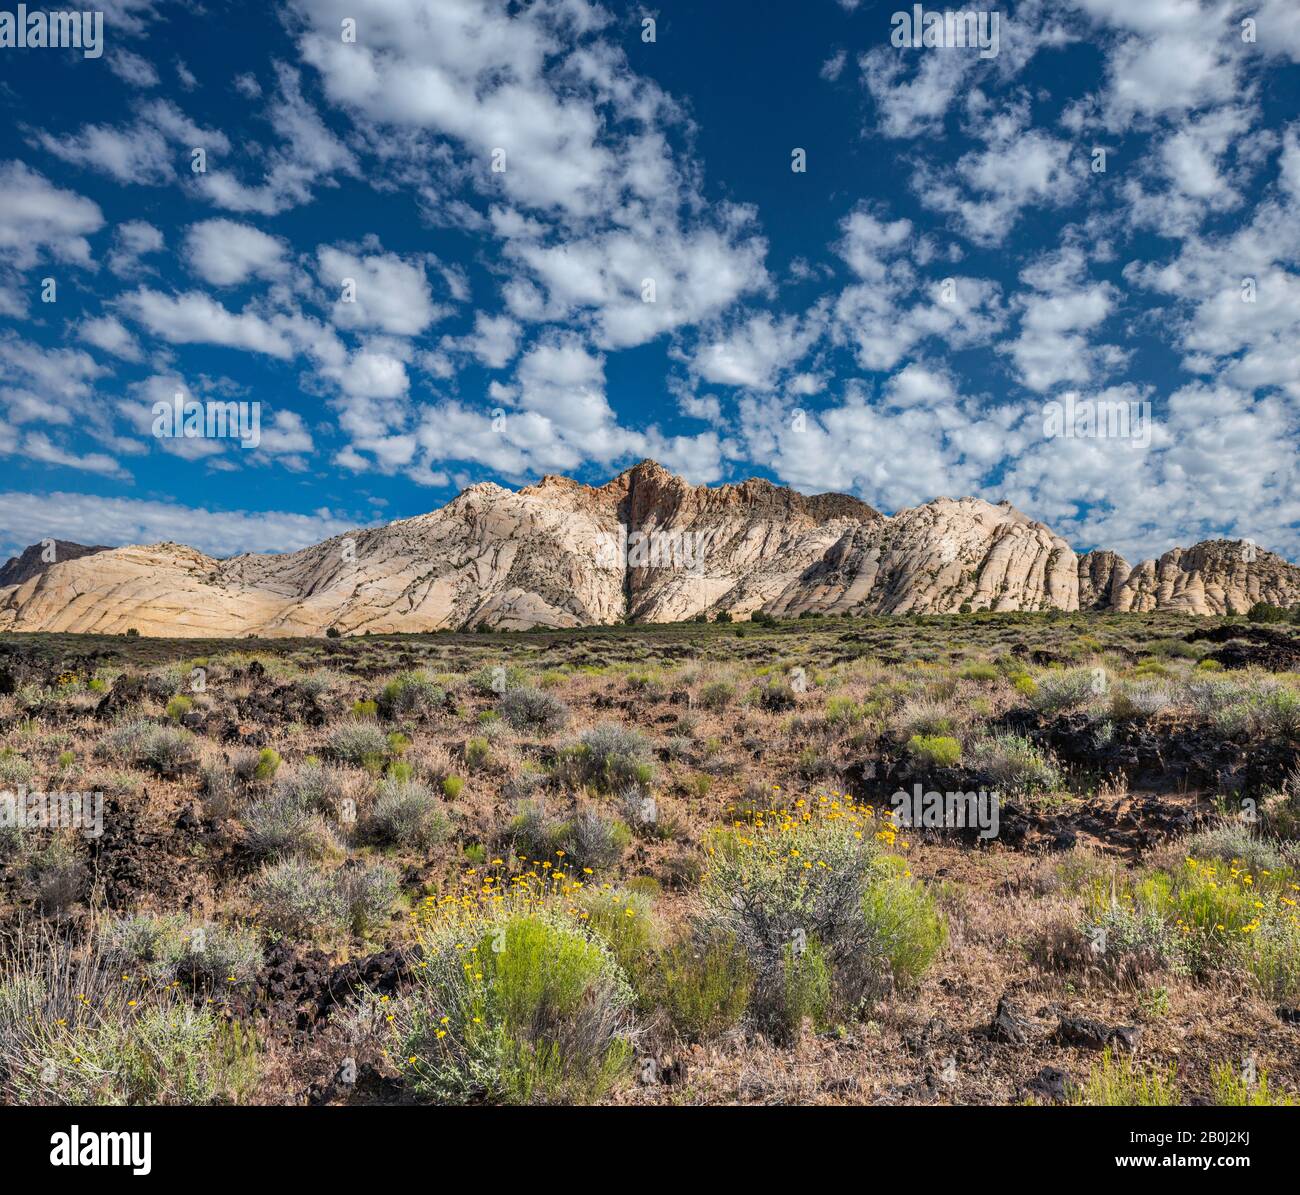 Les marigoles fleurent dans les roches volcaniques, avec des formations rocheuses blanches Navajo Sandstone dans la région de Whiterocks à distance, Snow Canyon State Park, Utah, États-Unis Banque D'Images